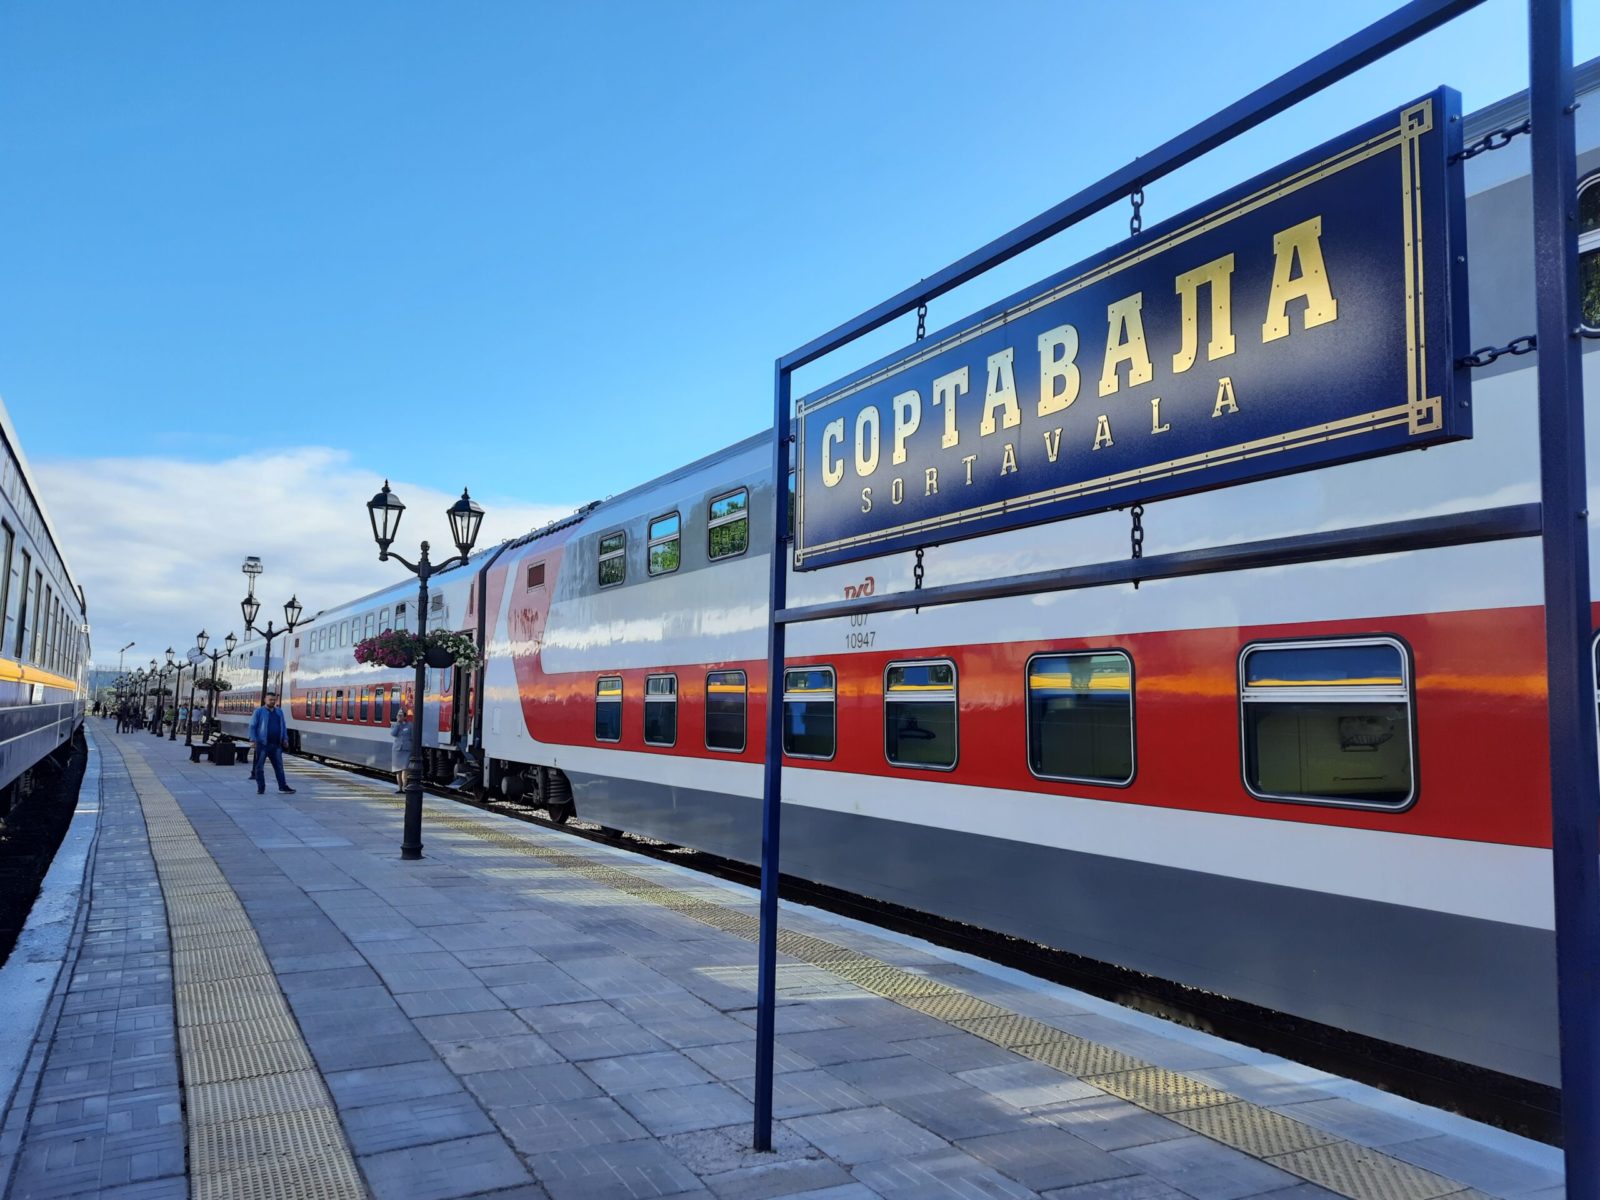 Поезда через сортавала. Сортавала Москва пое. Сортавала-Москва ЖД. Поезд Москва Владивосток. Все поезда с вагонами.